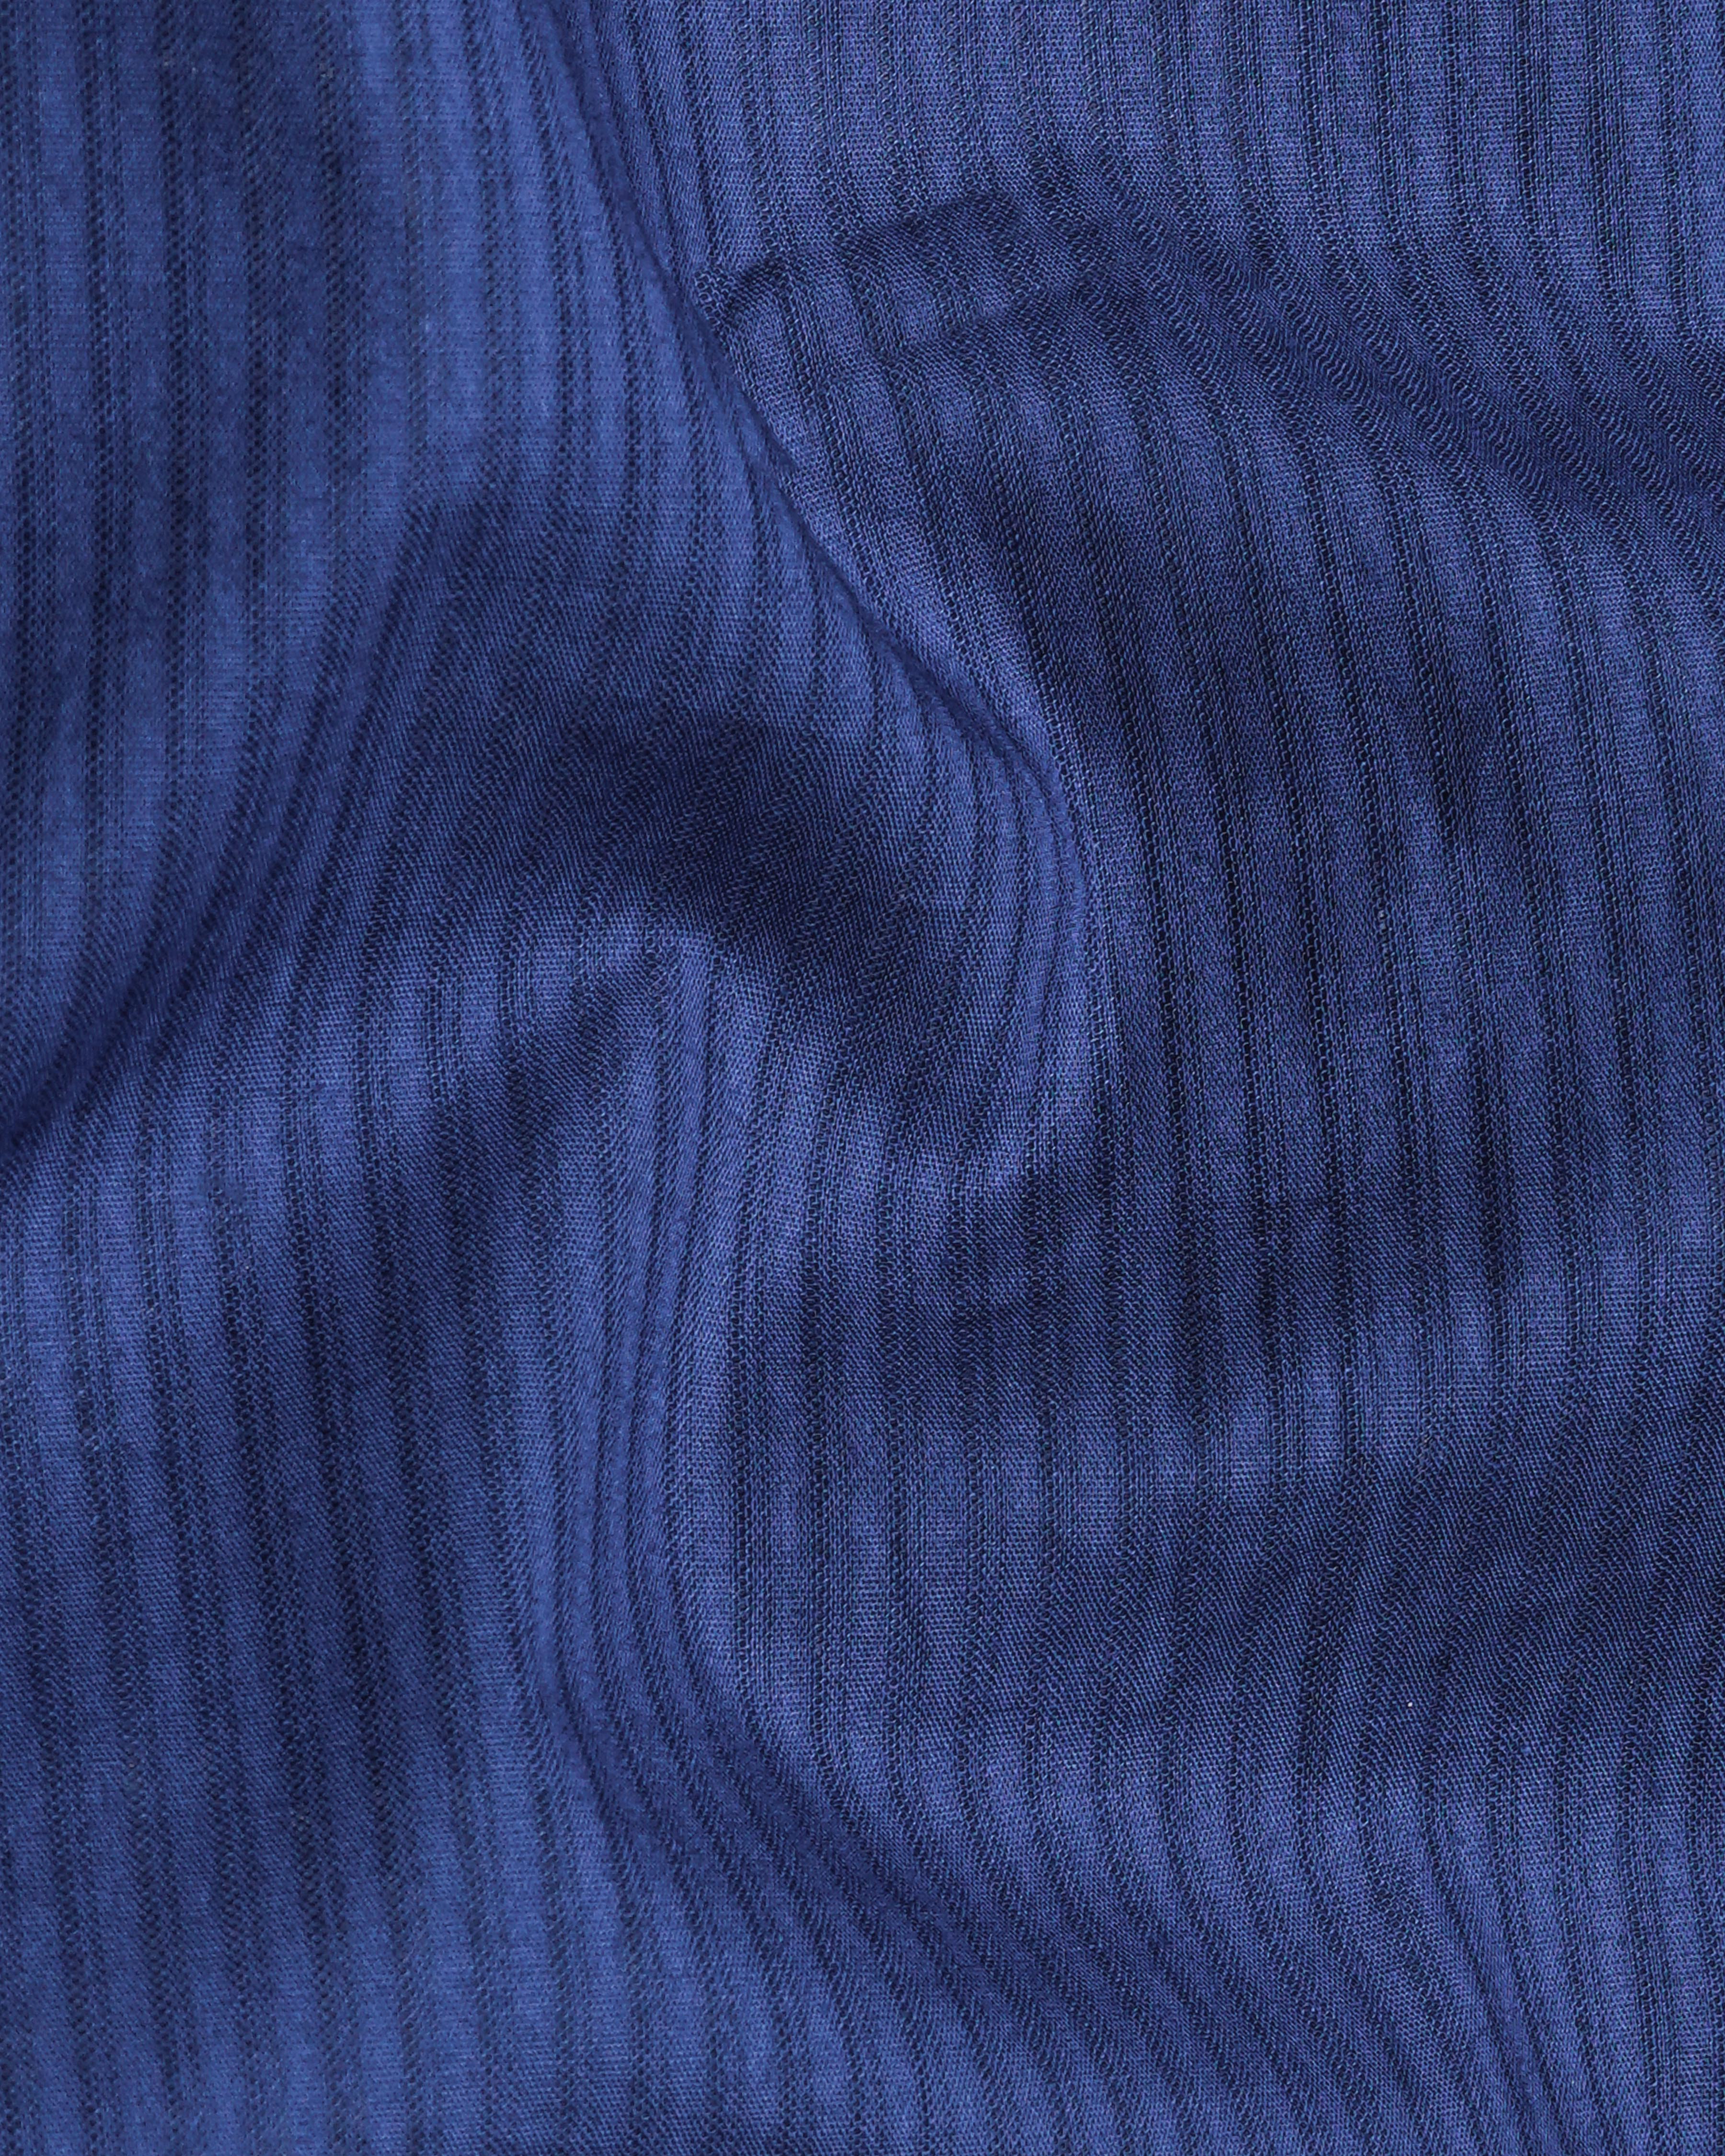 Rhino Blue Pin Striped Dobby Textured Premium Giza Cotton Shirt 8492-CA-38,8492-CA-H-38,8492-CA-39,8492-CA-H-39,8492-CA-40,8492-CA-H-40,8492-CA-42,8492-CA-H-42,8492-CA-44,8492-CA-H-44,8492-CA-46,8492-CA-H-46,8492-CA-48,8492-CA-H-48,8492-CA-50,8492-CA-H-50,8492-CA-52,8492-CA-H-52